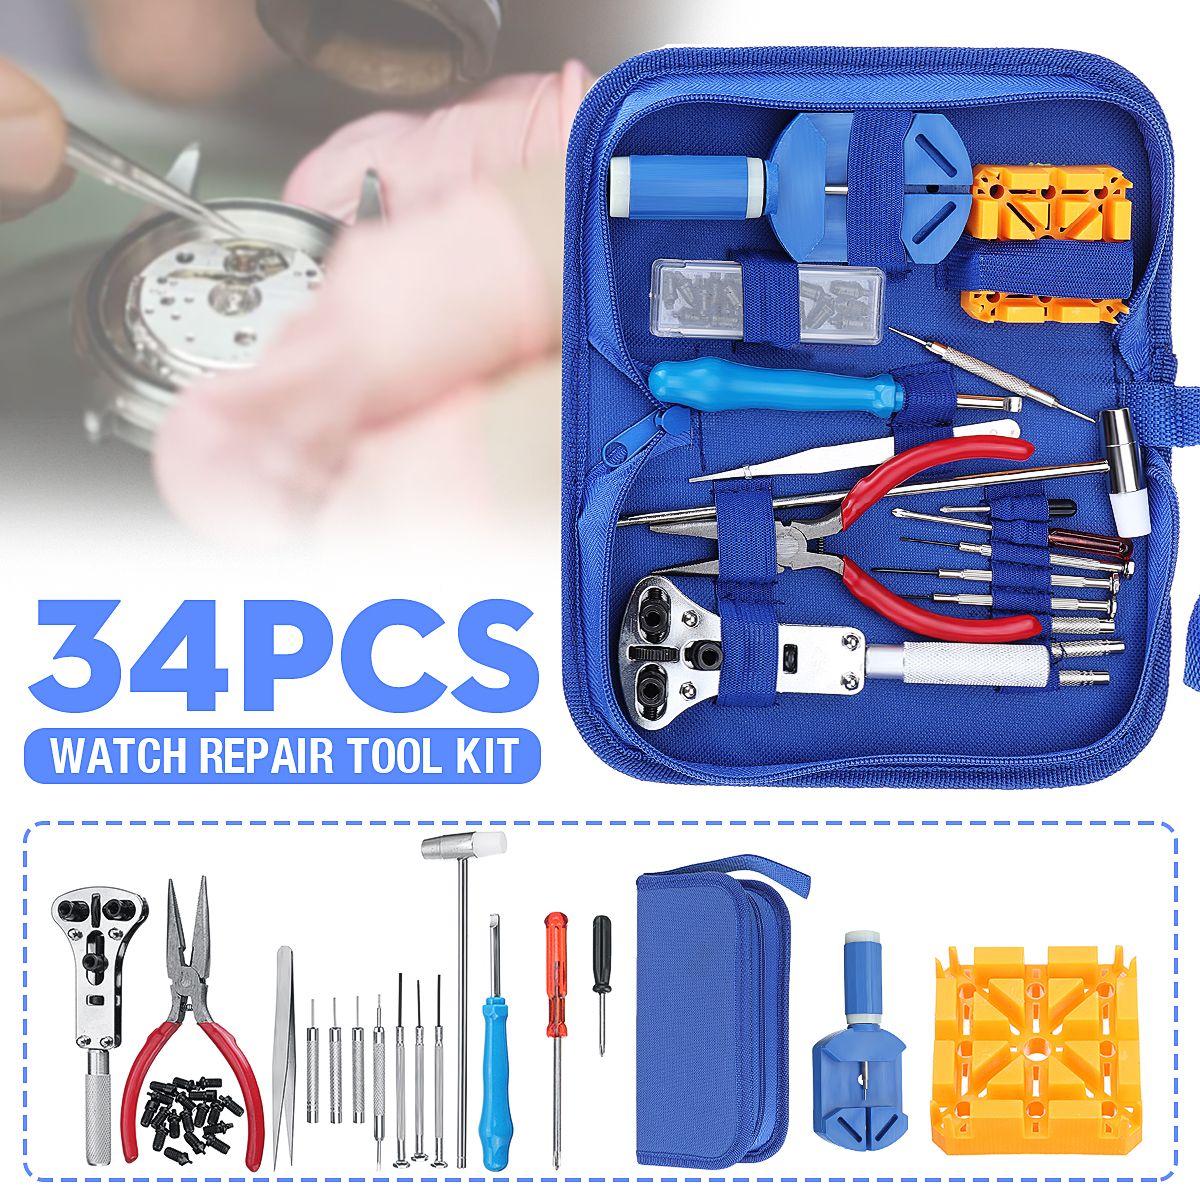 34pcs-Watch-Repair-Tool-Kit-Clock-Band-Strap-Cover-Remover-Opener-Screwdriver-1667888